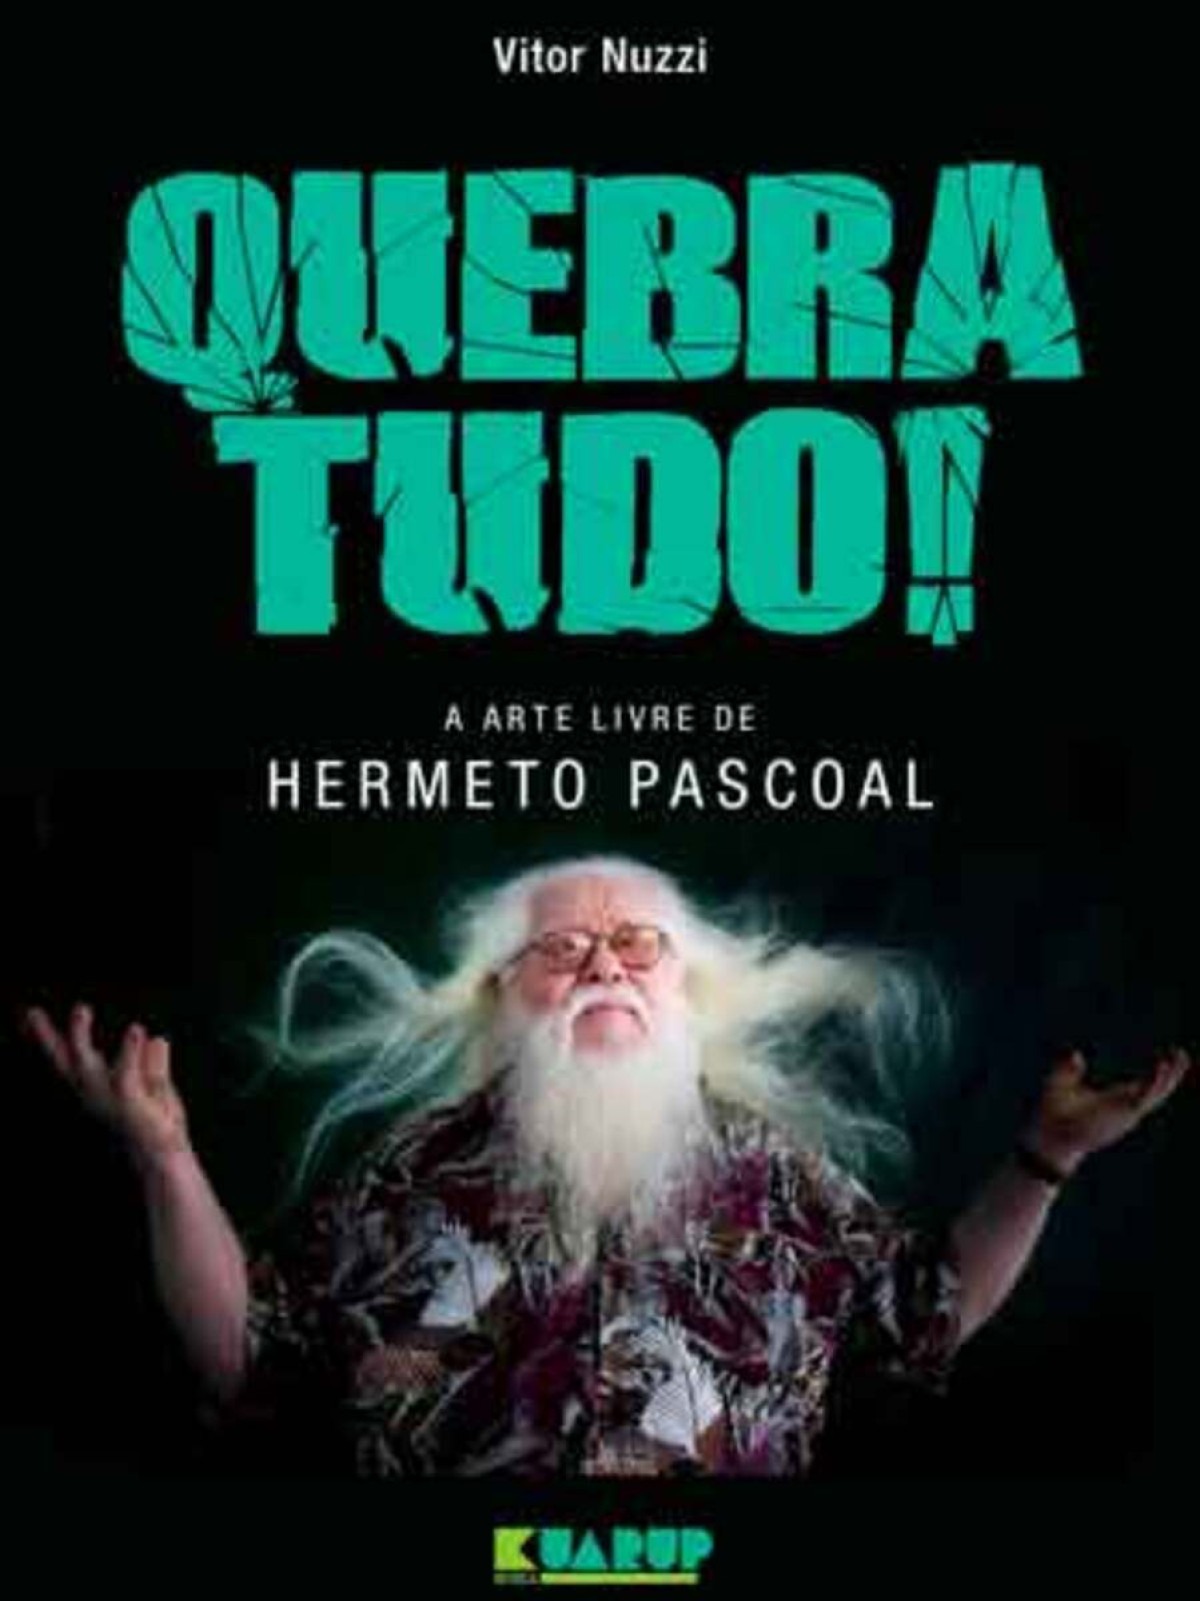 Capa do livro "QUEBRA TUDO! A ARTE LIVRE DE HERMETO PASCOAL"